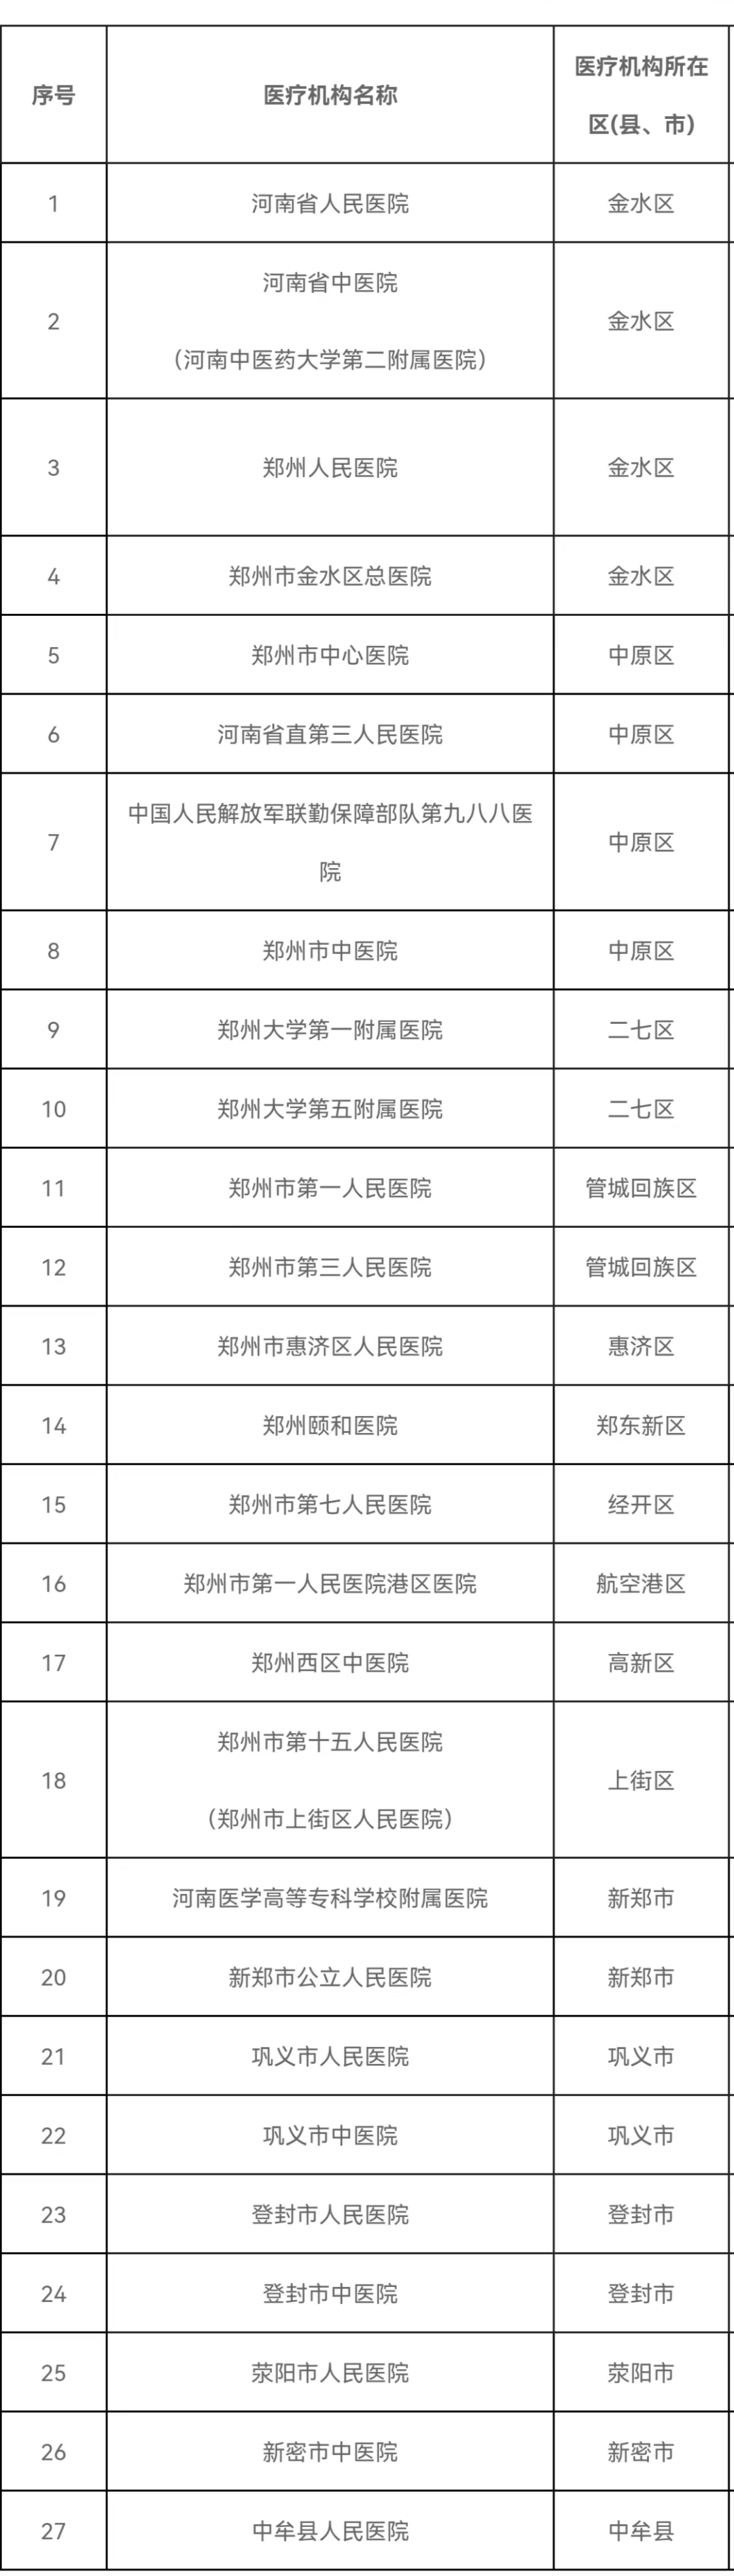 门诊慢特病跨省结算服务 郑州这27家医院开通了！覆盖全市16个区县（市）_中原网视台